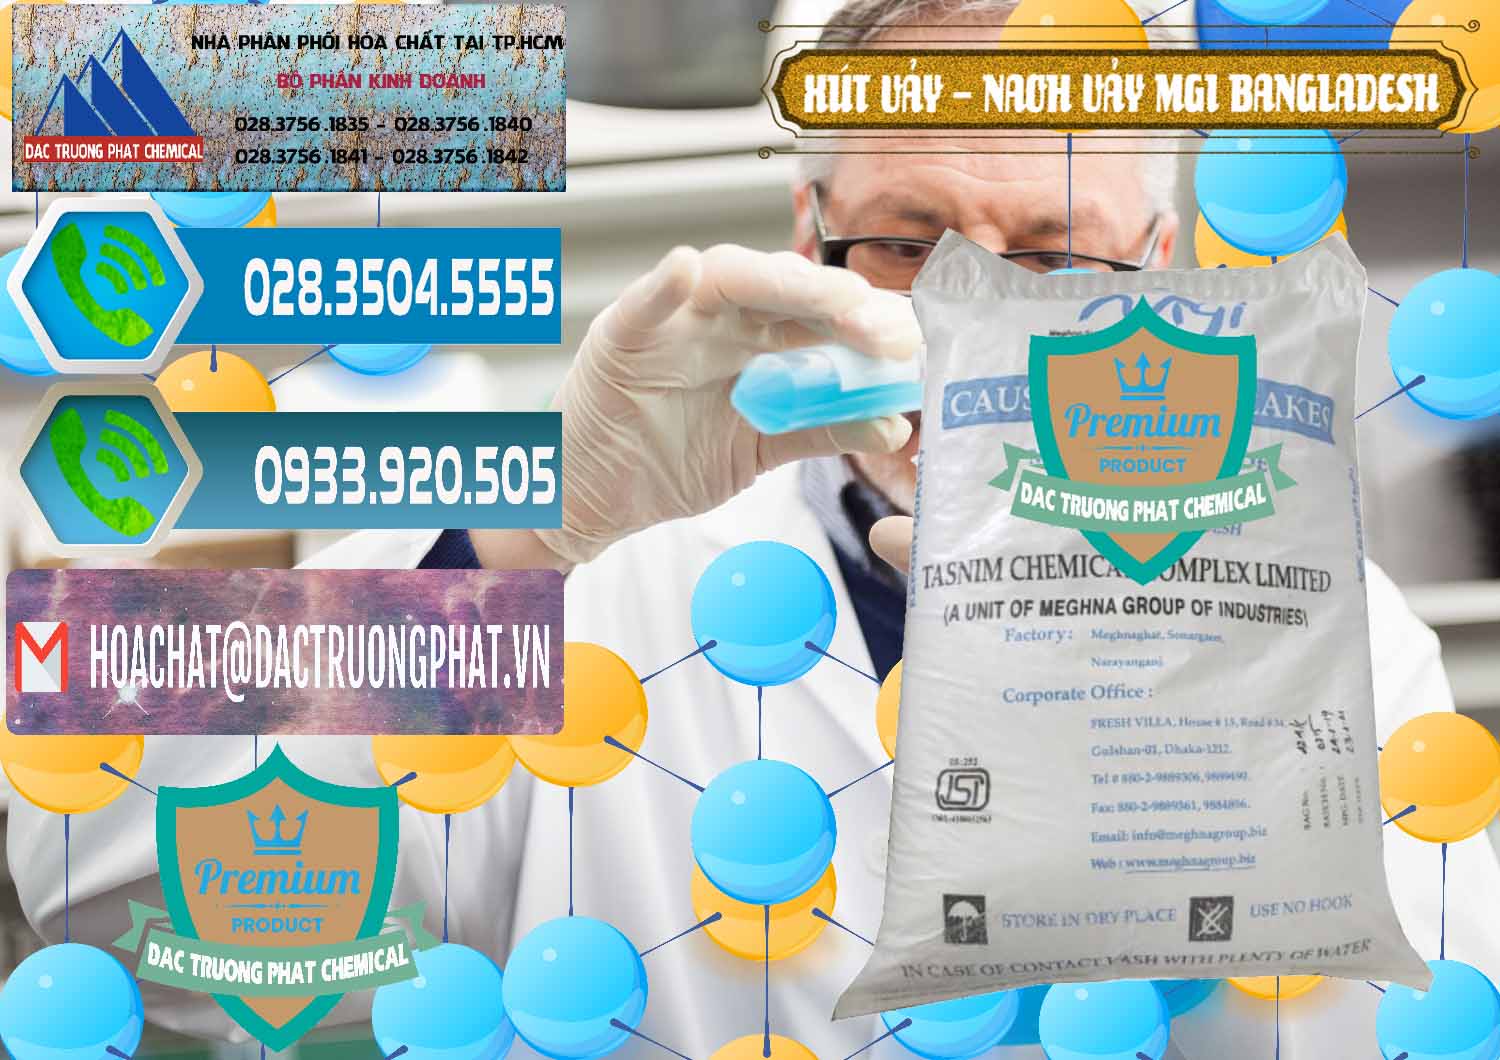 Cung cấp - bán Xút Vảy - NaOH Vảy 99% MGI Bangladesh - 0274 - Công ty cung cấp ( kinh doanh ) hóa chất tại TP.HCM - congtyhoachat.net